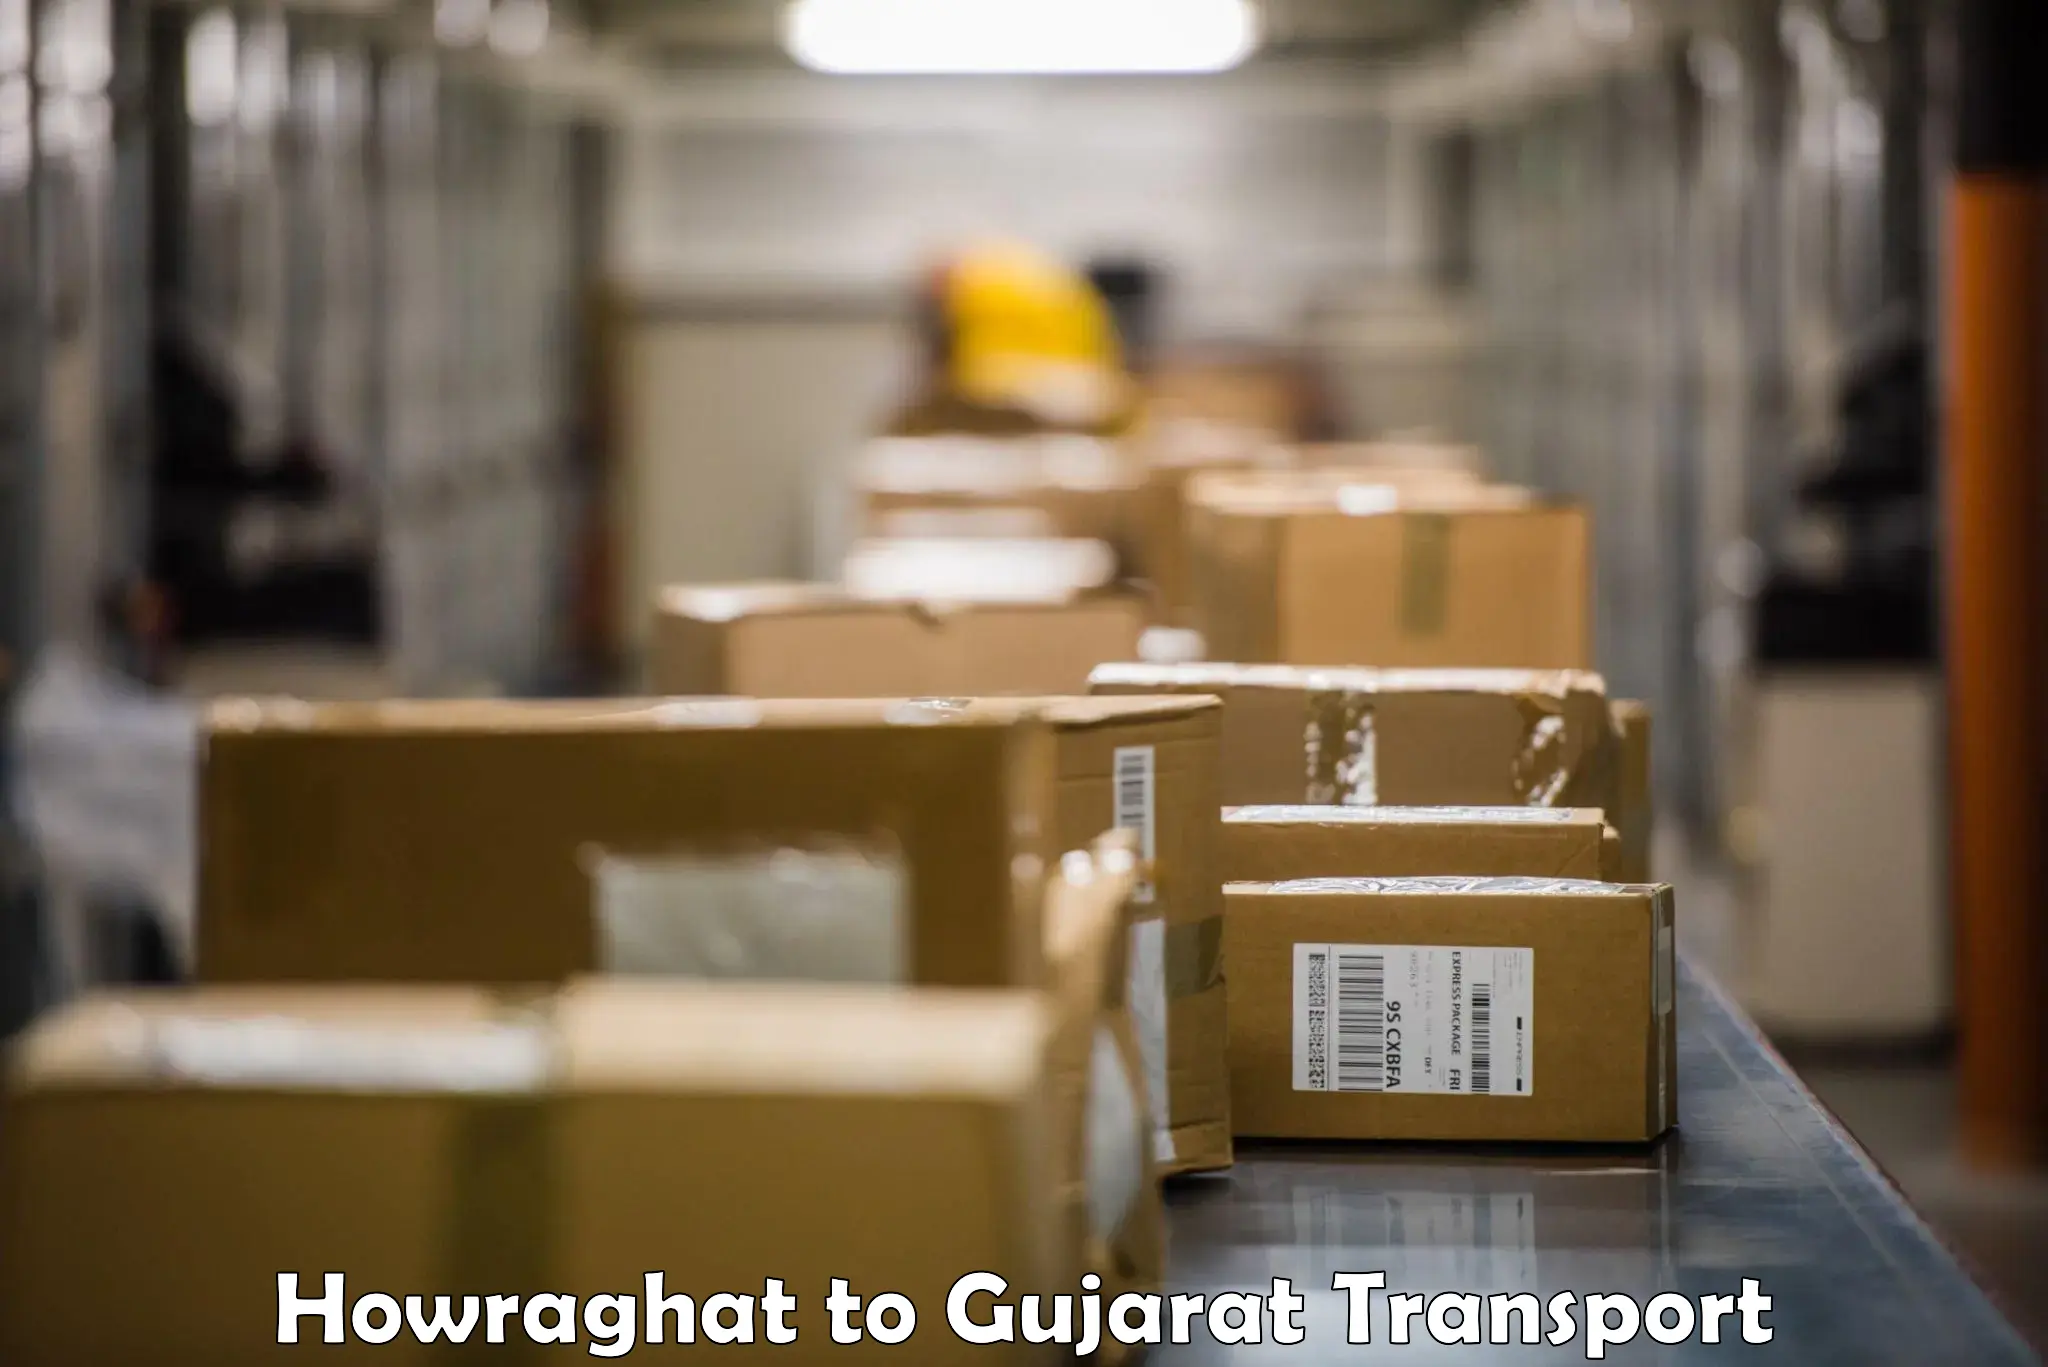 Parcel transport services Howraghat to Gandhinagar